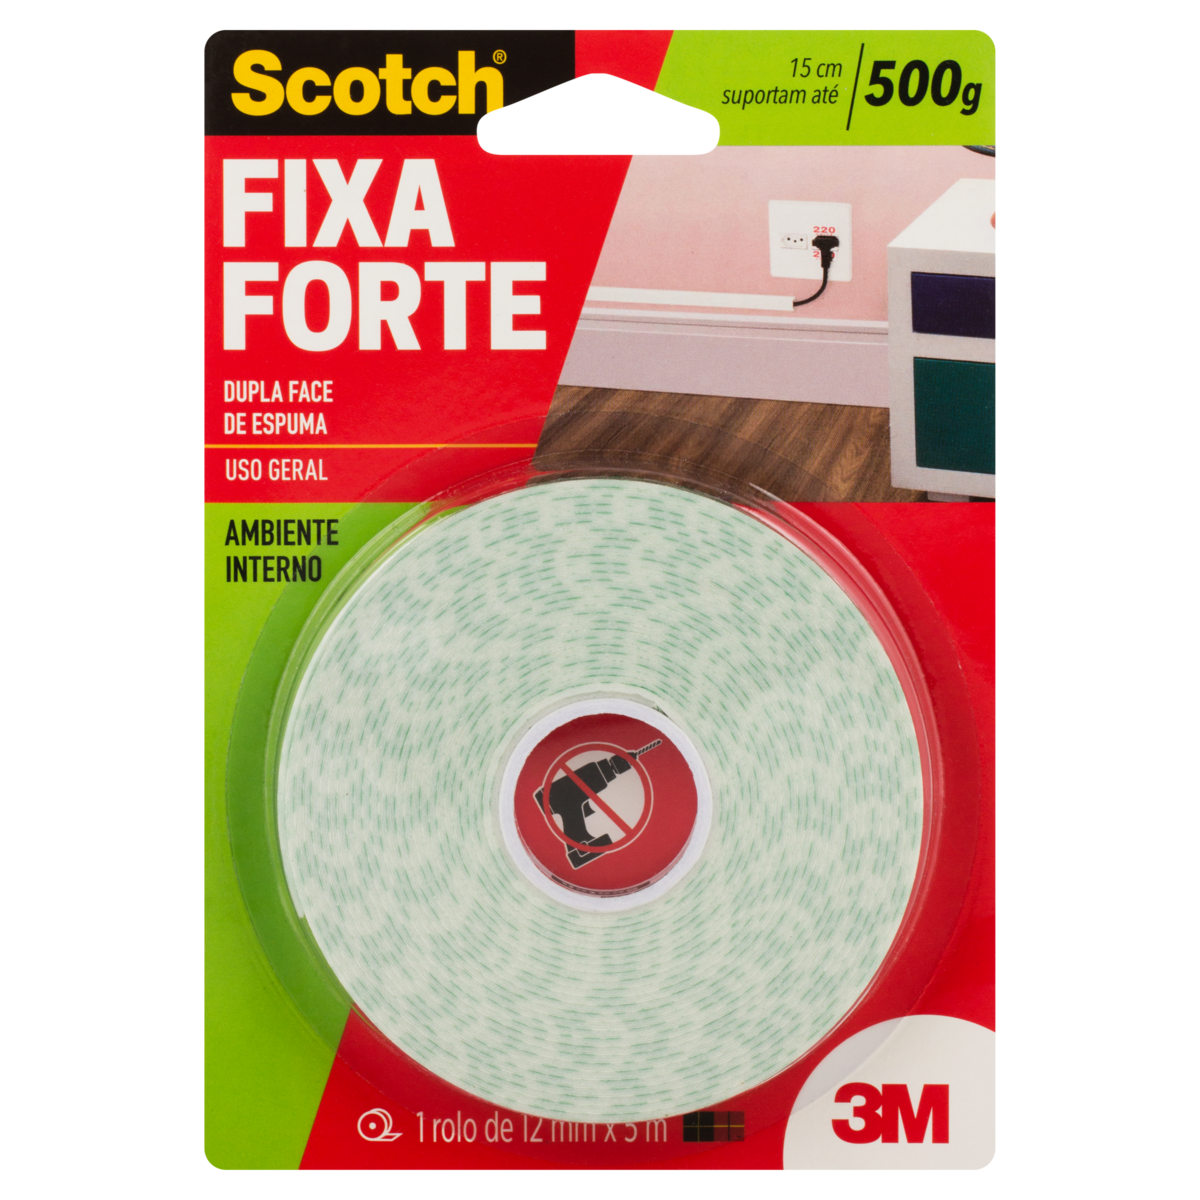 7891040121410 - FITA DUPLA FACE DE ESPUMA SCOTCH FIXA FORTE 12MM X 5M